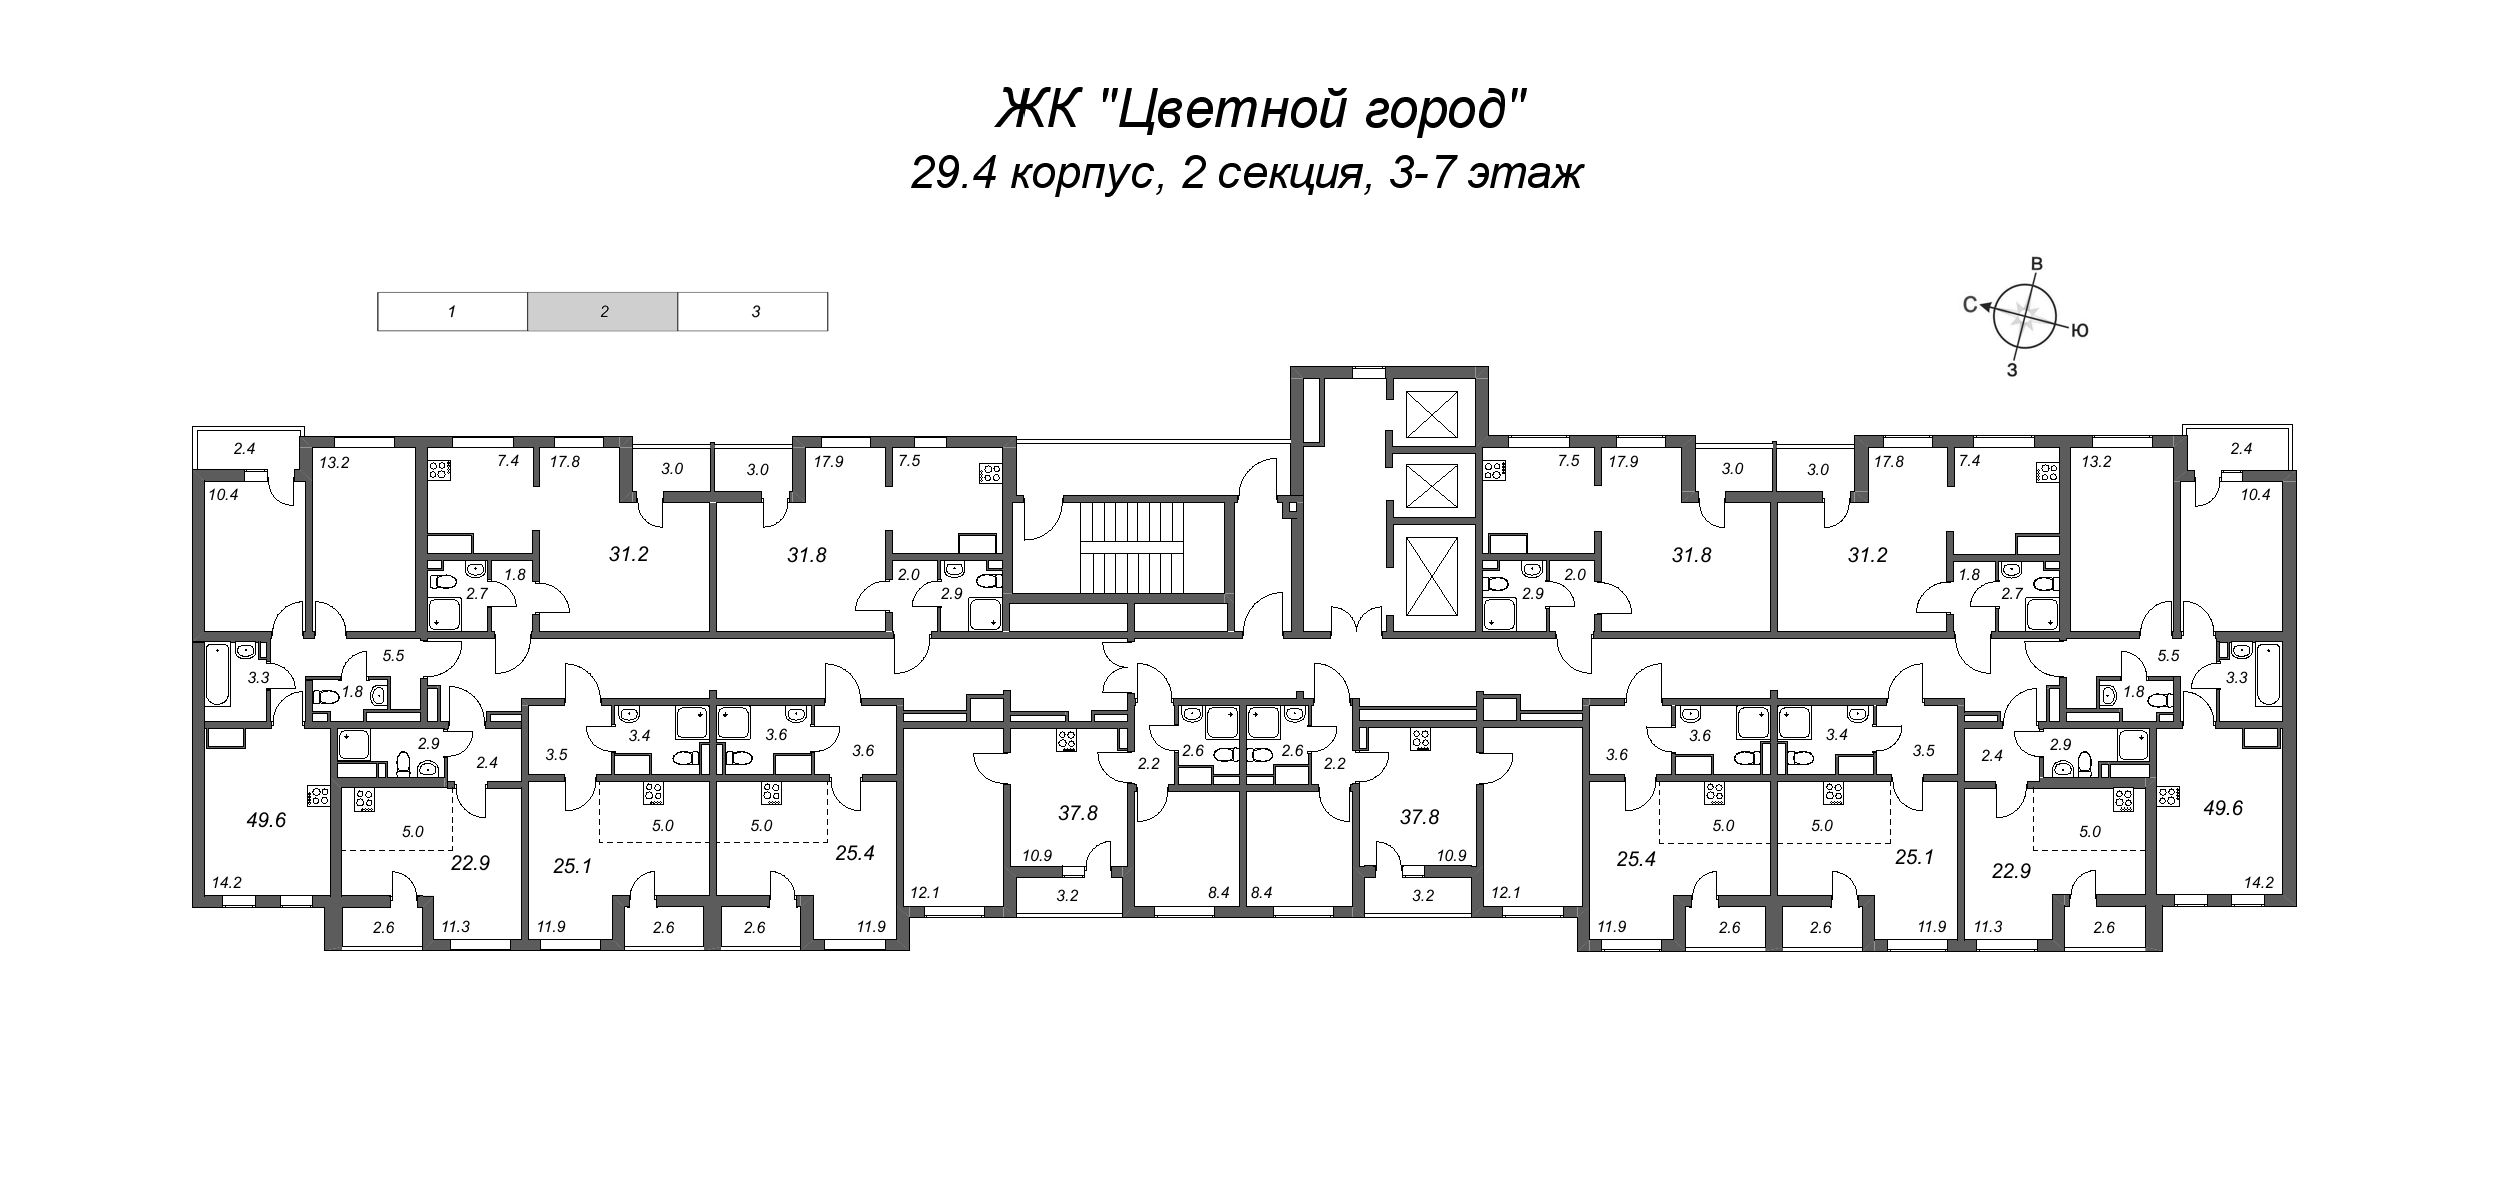 Квартира-студия, 25.1 м² в ЖК "Цветной город" - планировка этажа